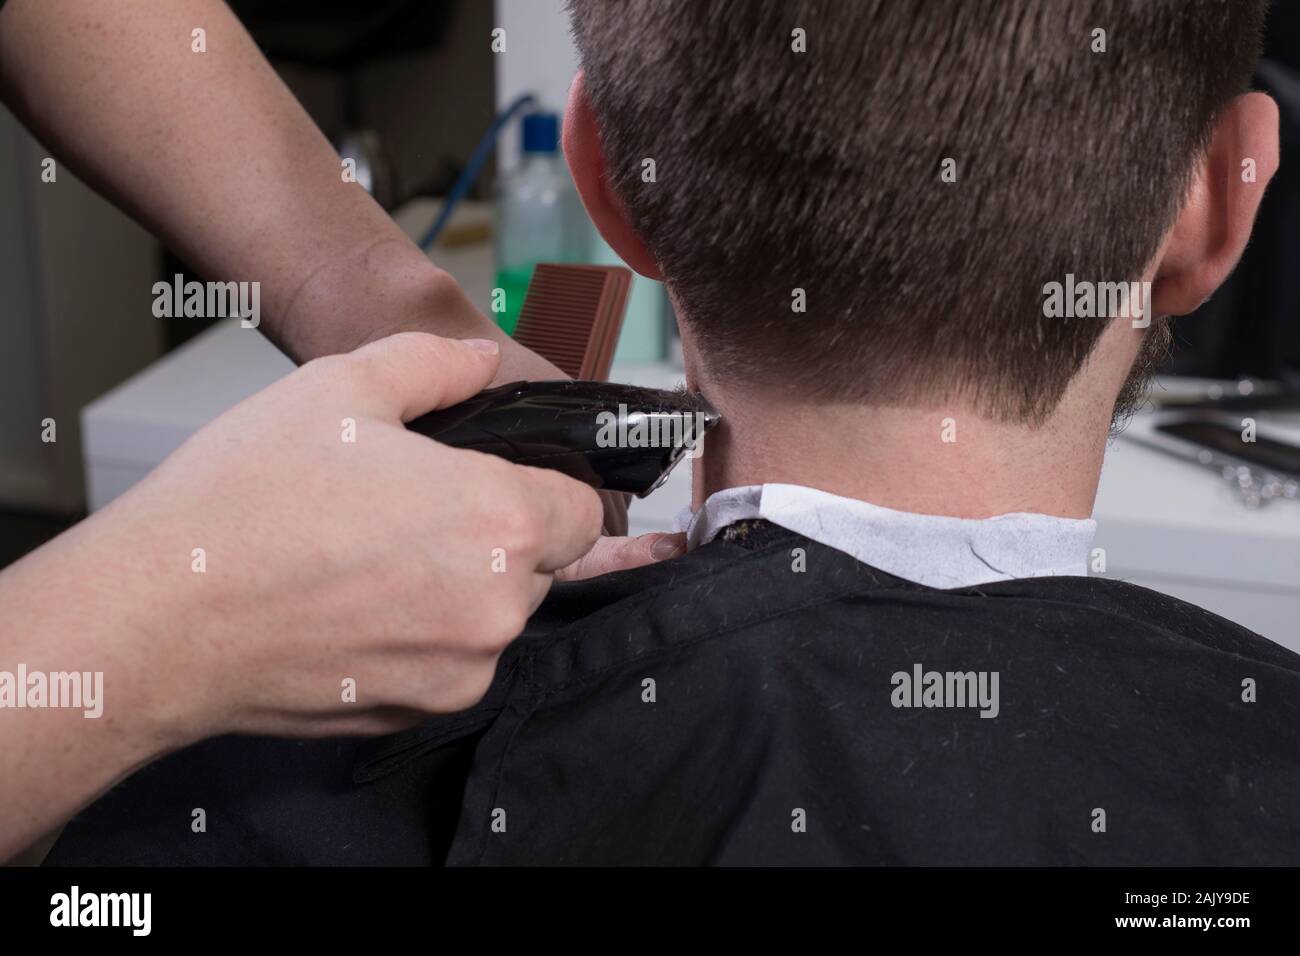 Friseur schneidet die Haare mit einem Langhaarschneider für einen jungen  Mann mit einem Bart. Nahaufnahme eines Master haircutting männliche Haar. Haare  schneiden in den Tempelanlagen von einem Kerl. B Stockfotografie - Alamy